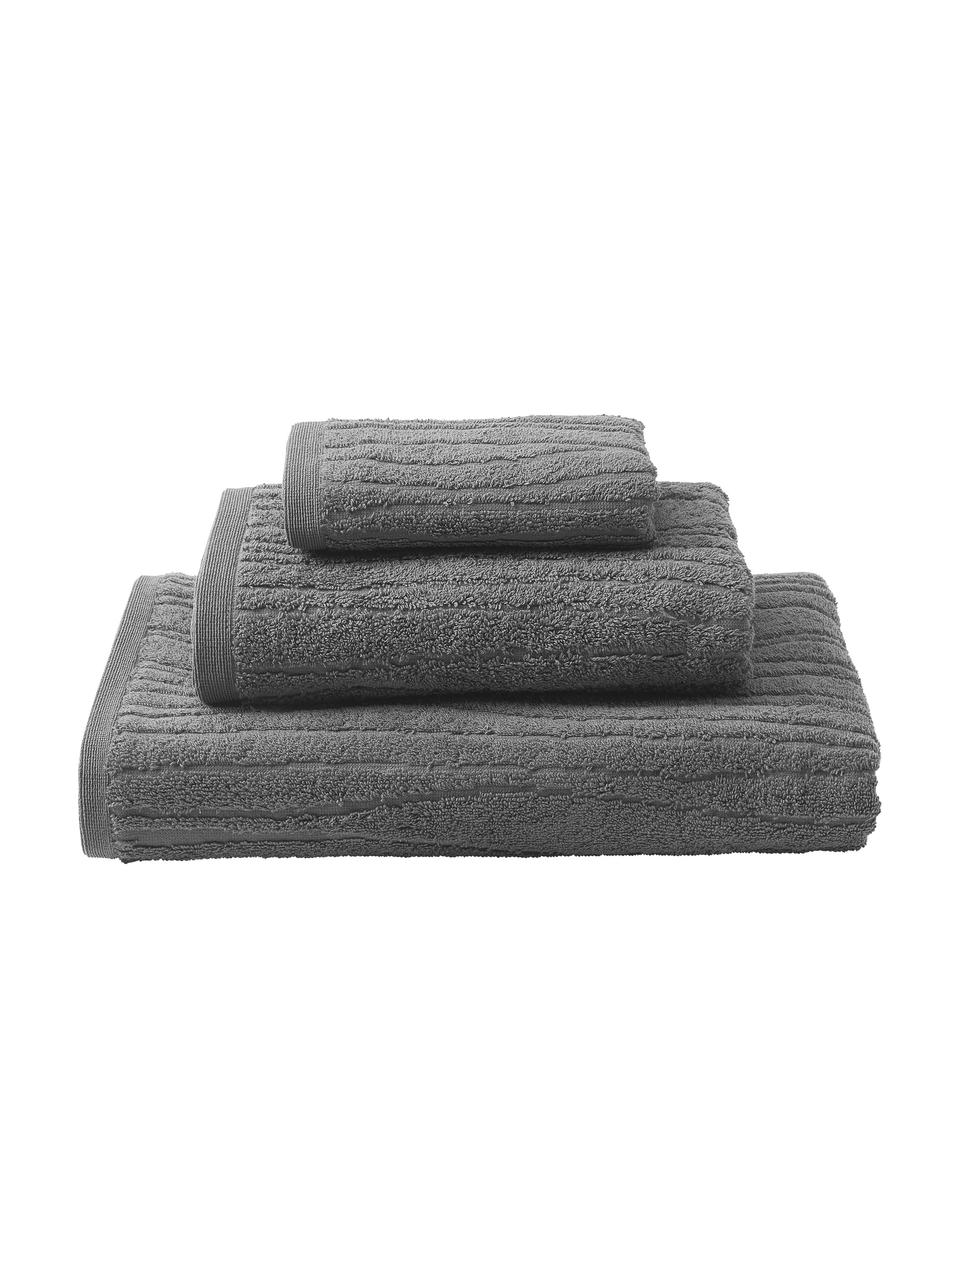 Komplet ręczników z bawełny Audrina, 3 elem., Ciemny szary, Komplet z różnymi rozmiarami